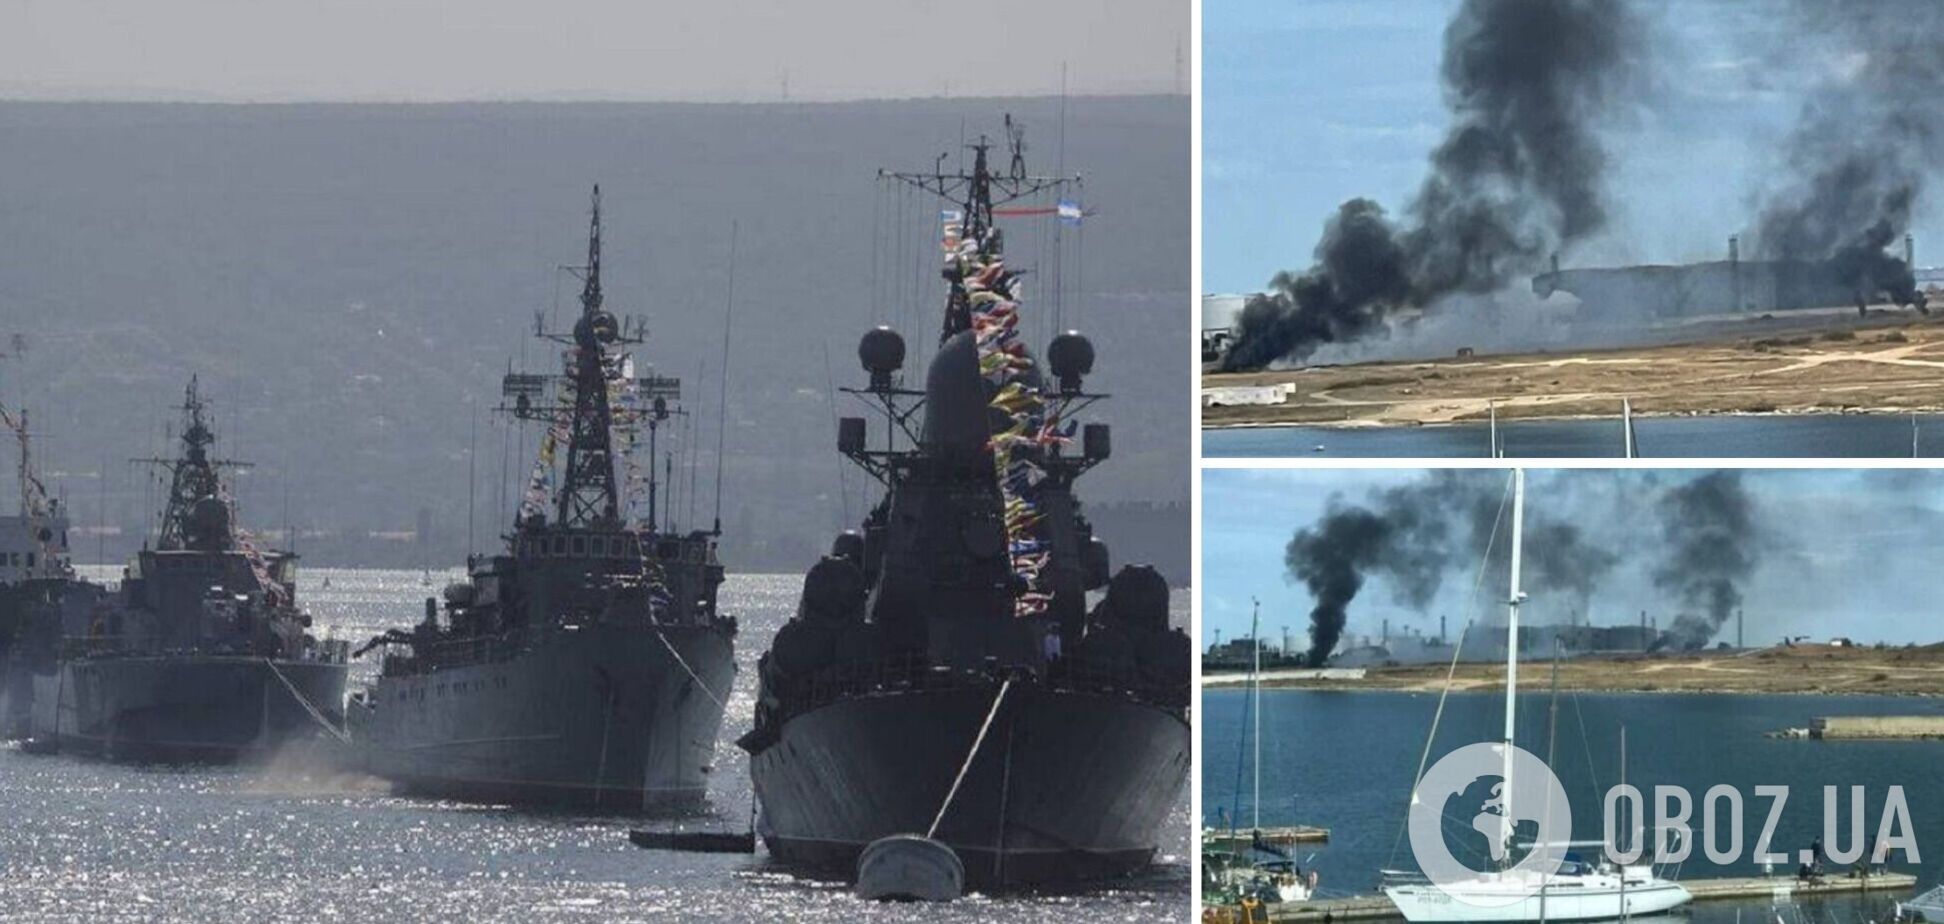 В Севастополе взорвались четыре военных корабля Черноморского флота РФ, – Геращенко